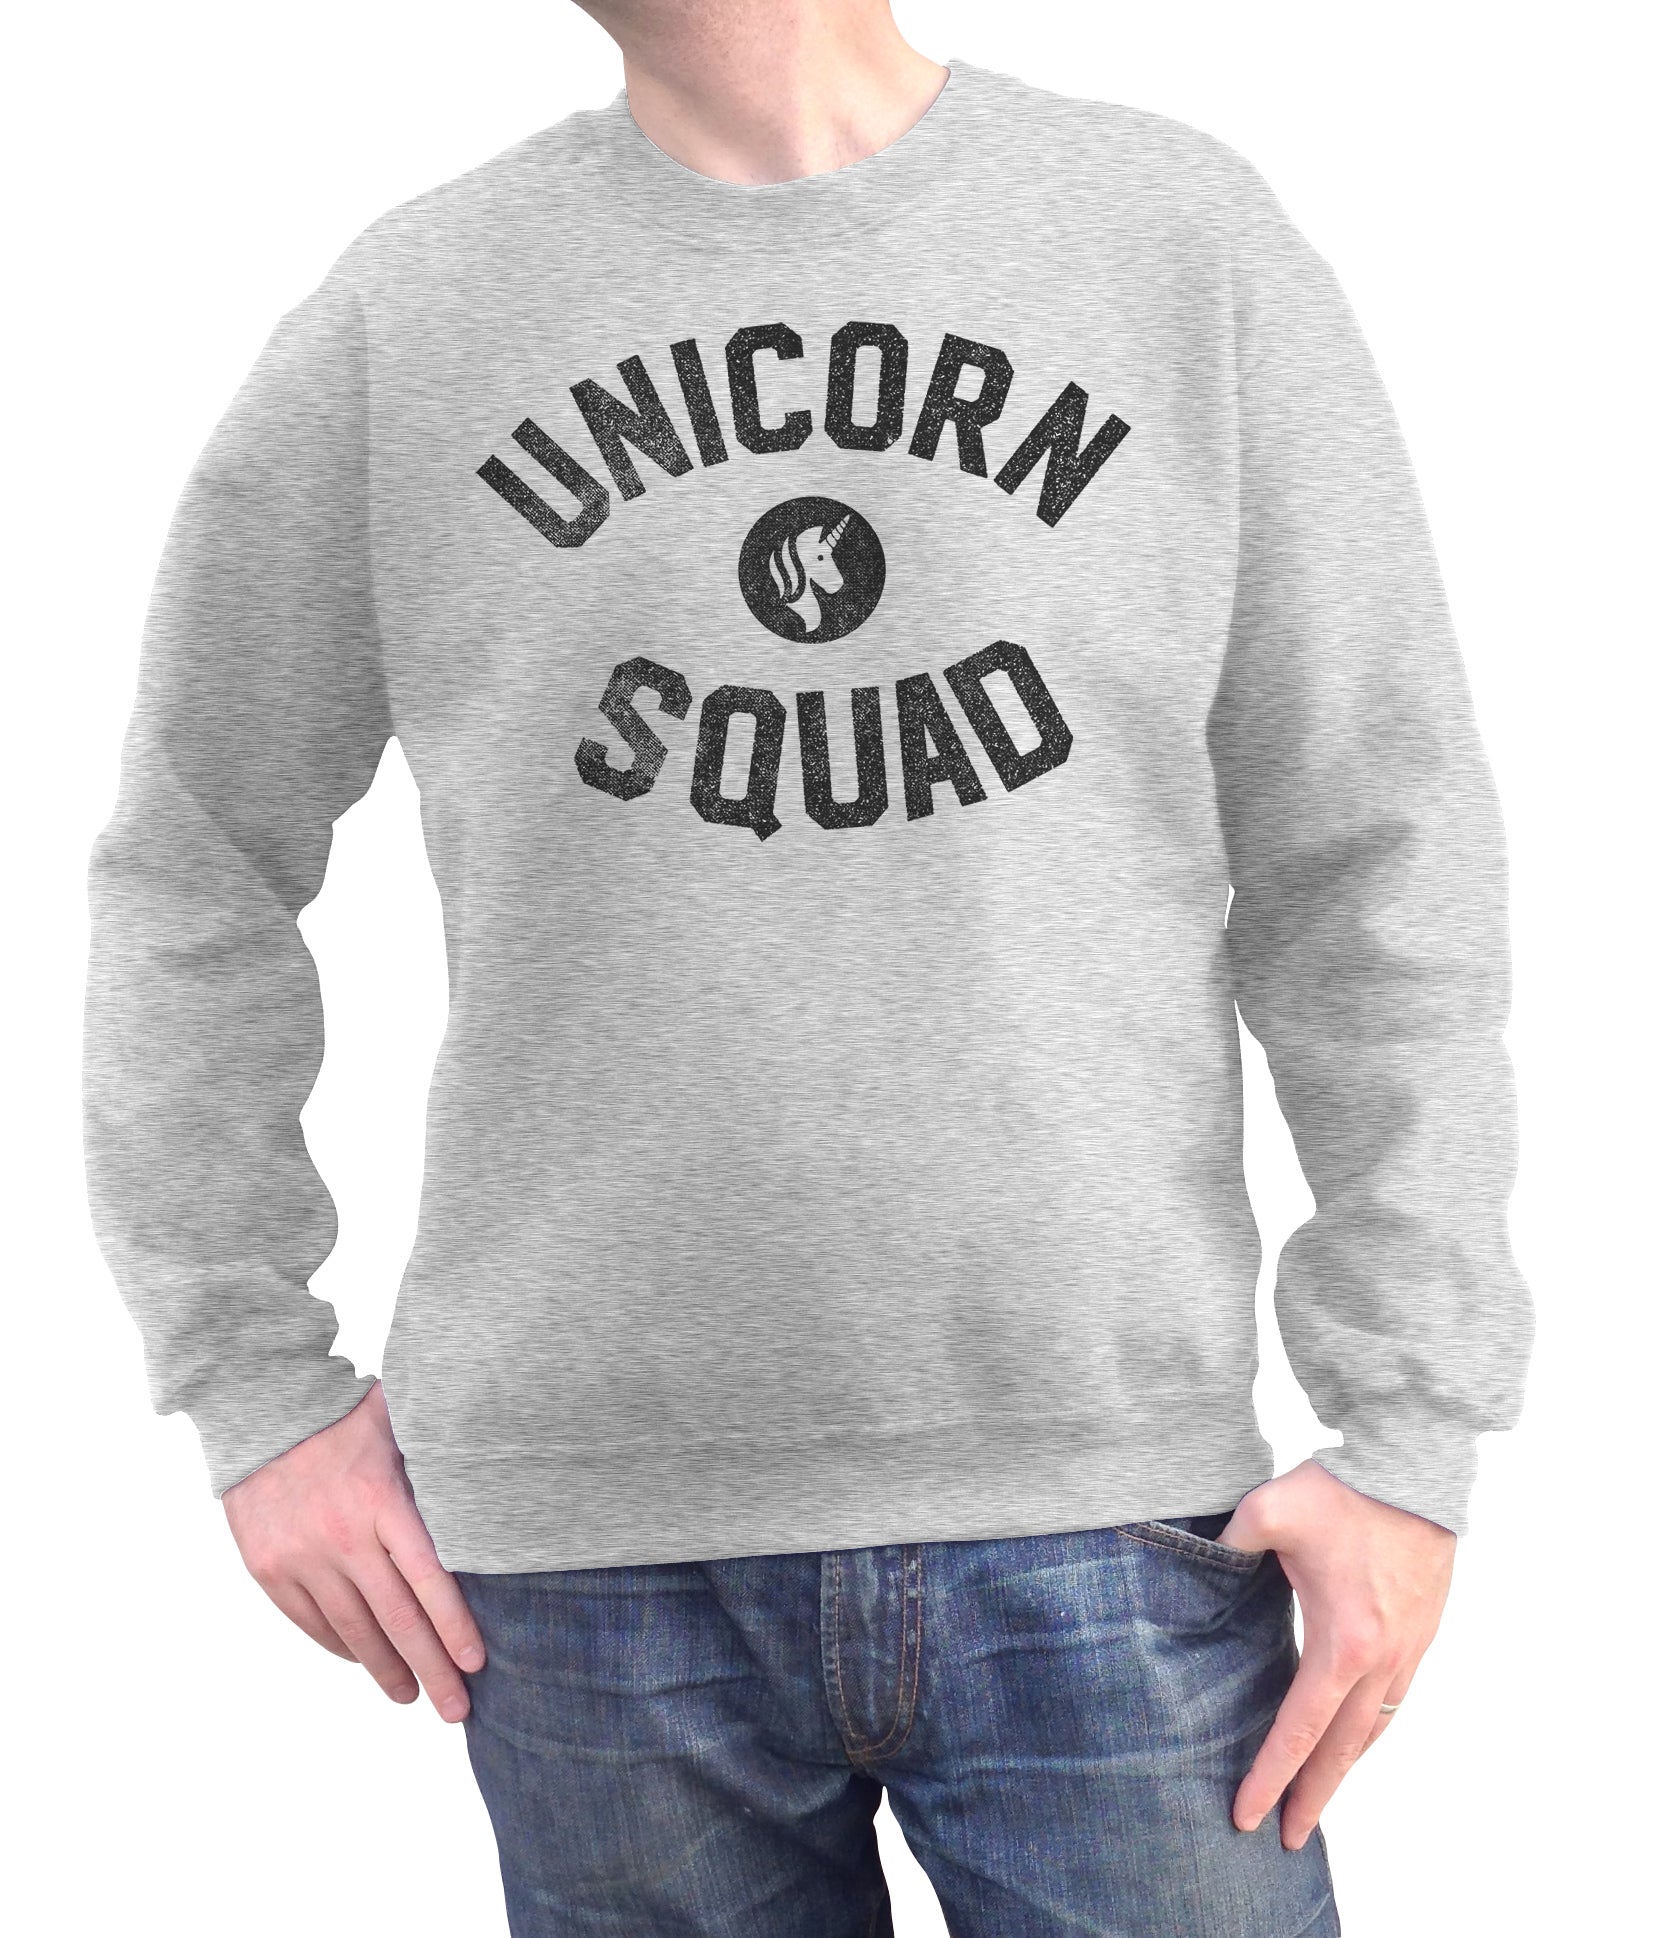 Unisex Unicorn Squad Sweatshirt - Funny Unicorn Shirt